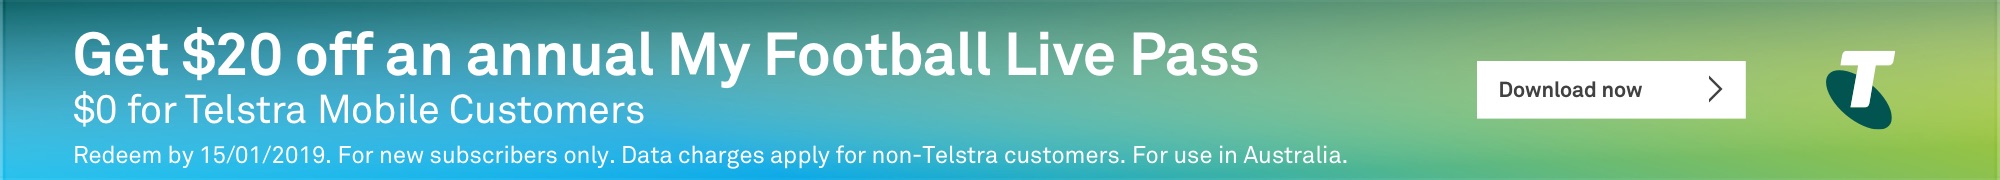 Telstra banner